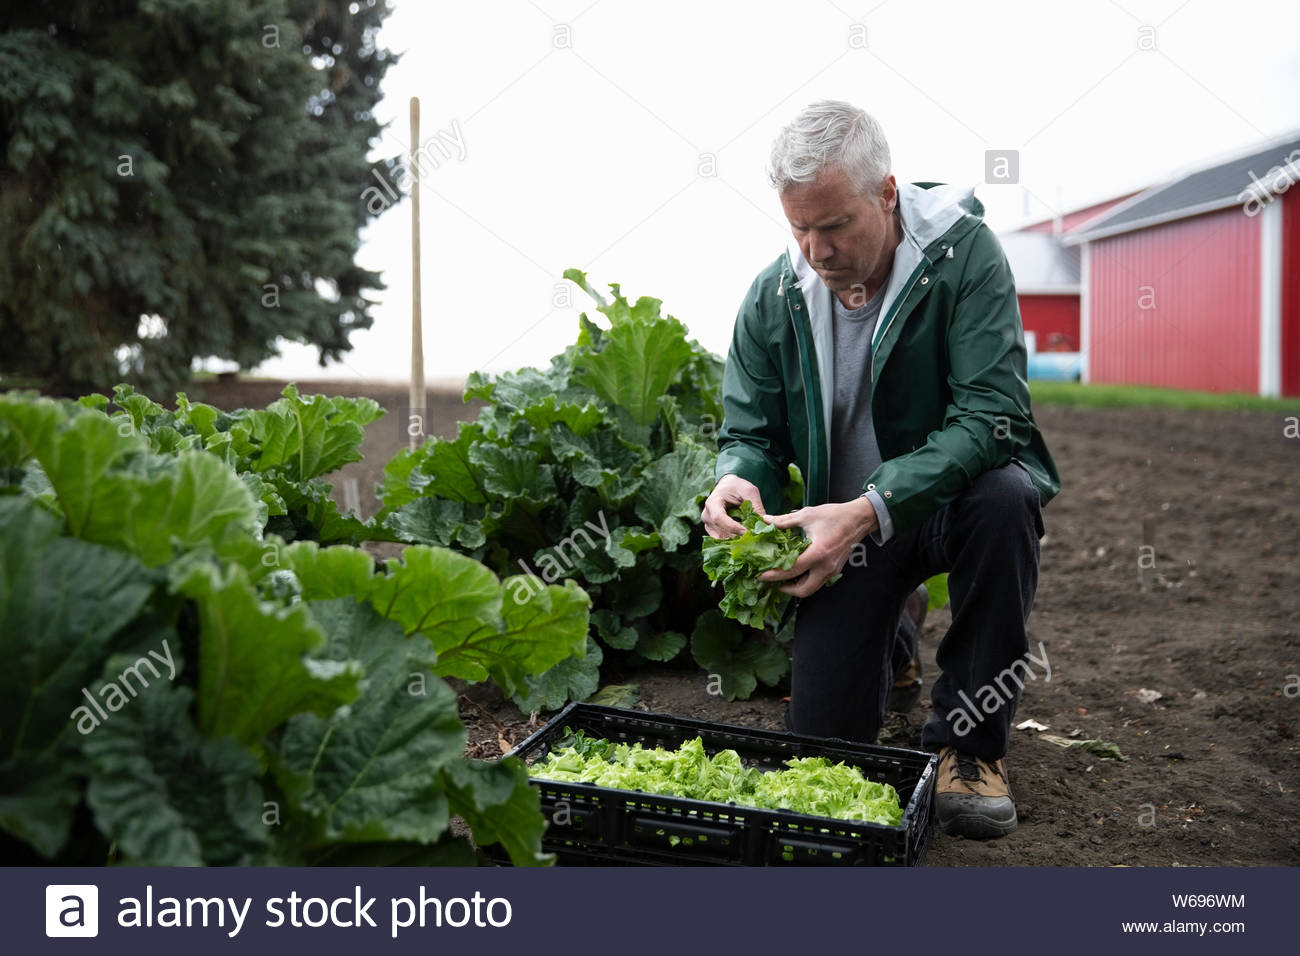 Male farmer harvesting lettuce in vegetable garden on farm Stock Photo